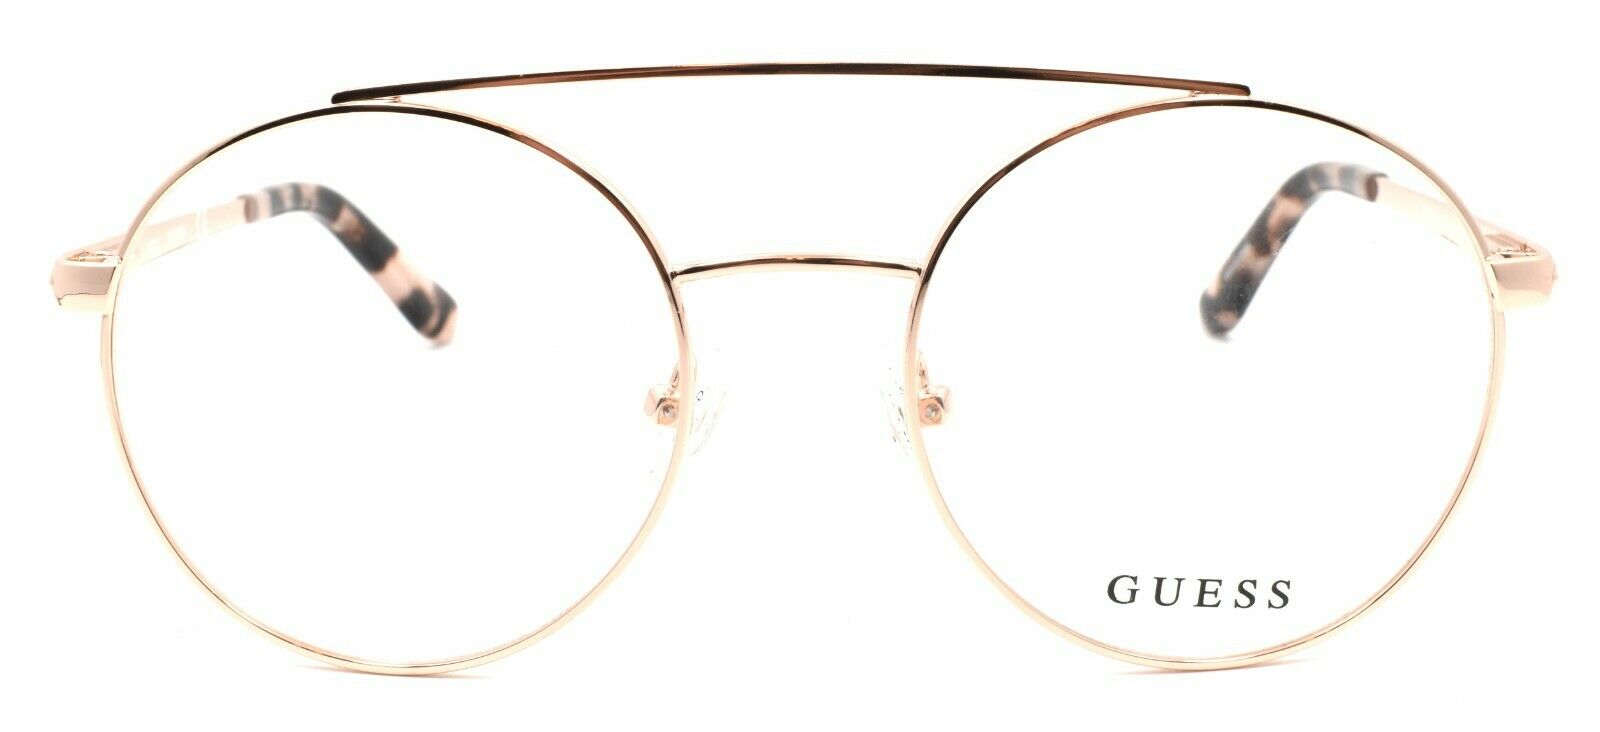 2-GUESS GU2714 032 Women's Eyeglasses Frames Aviator 52-18-135 Pale Gold-889214034113-IKSpecs